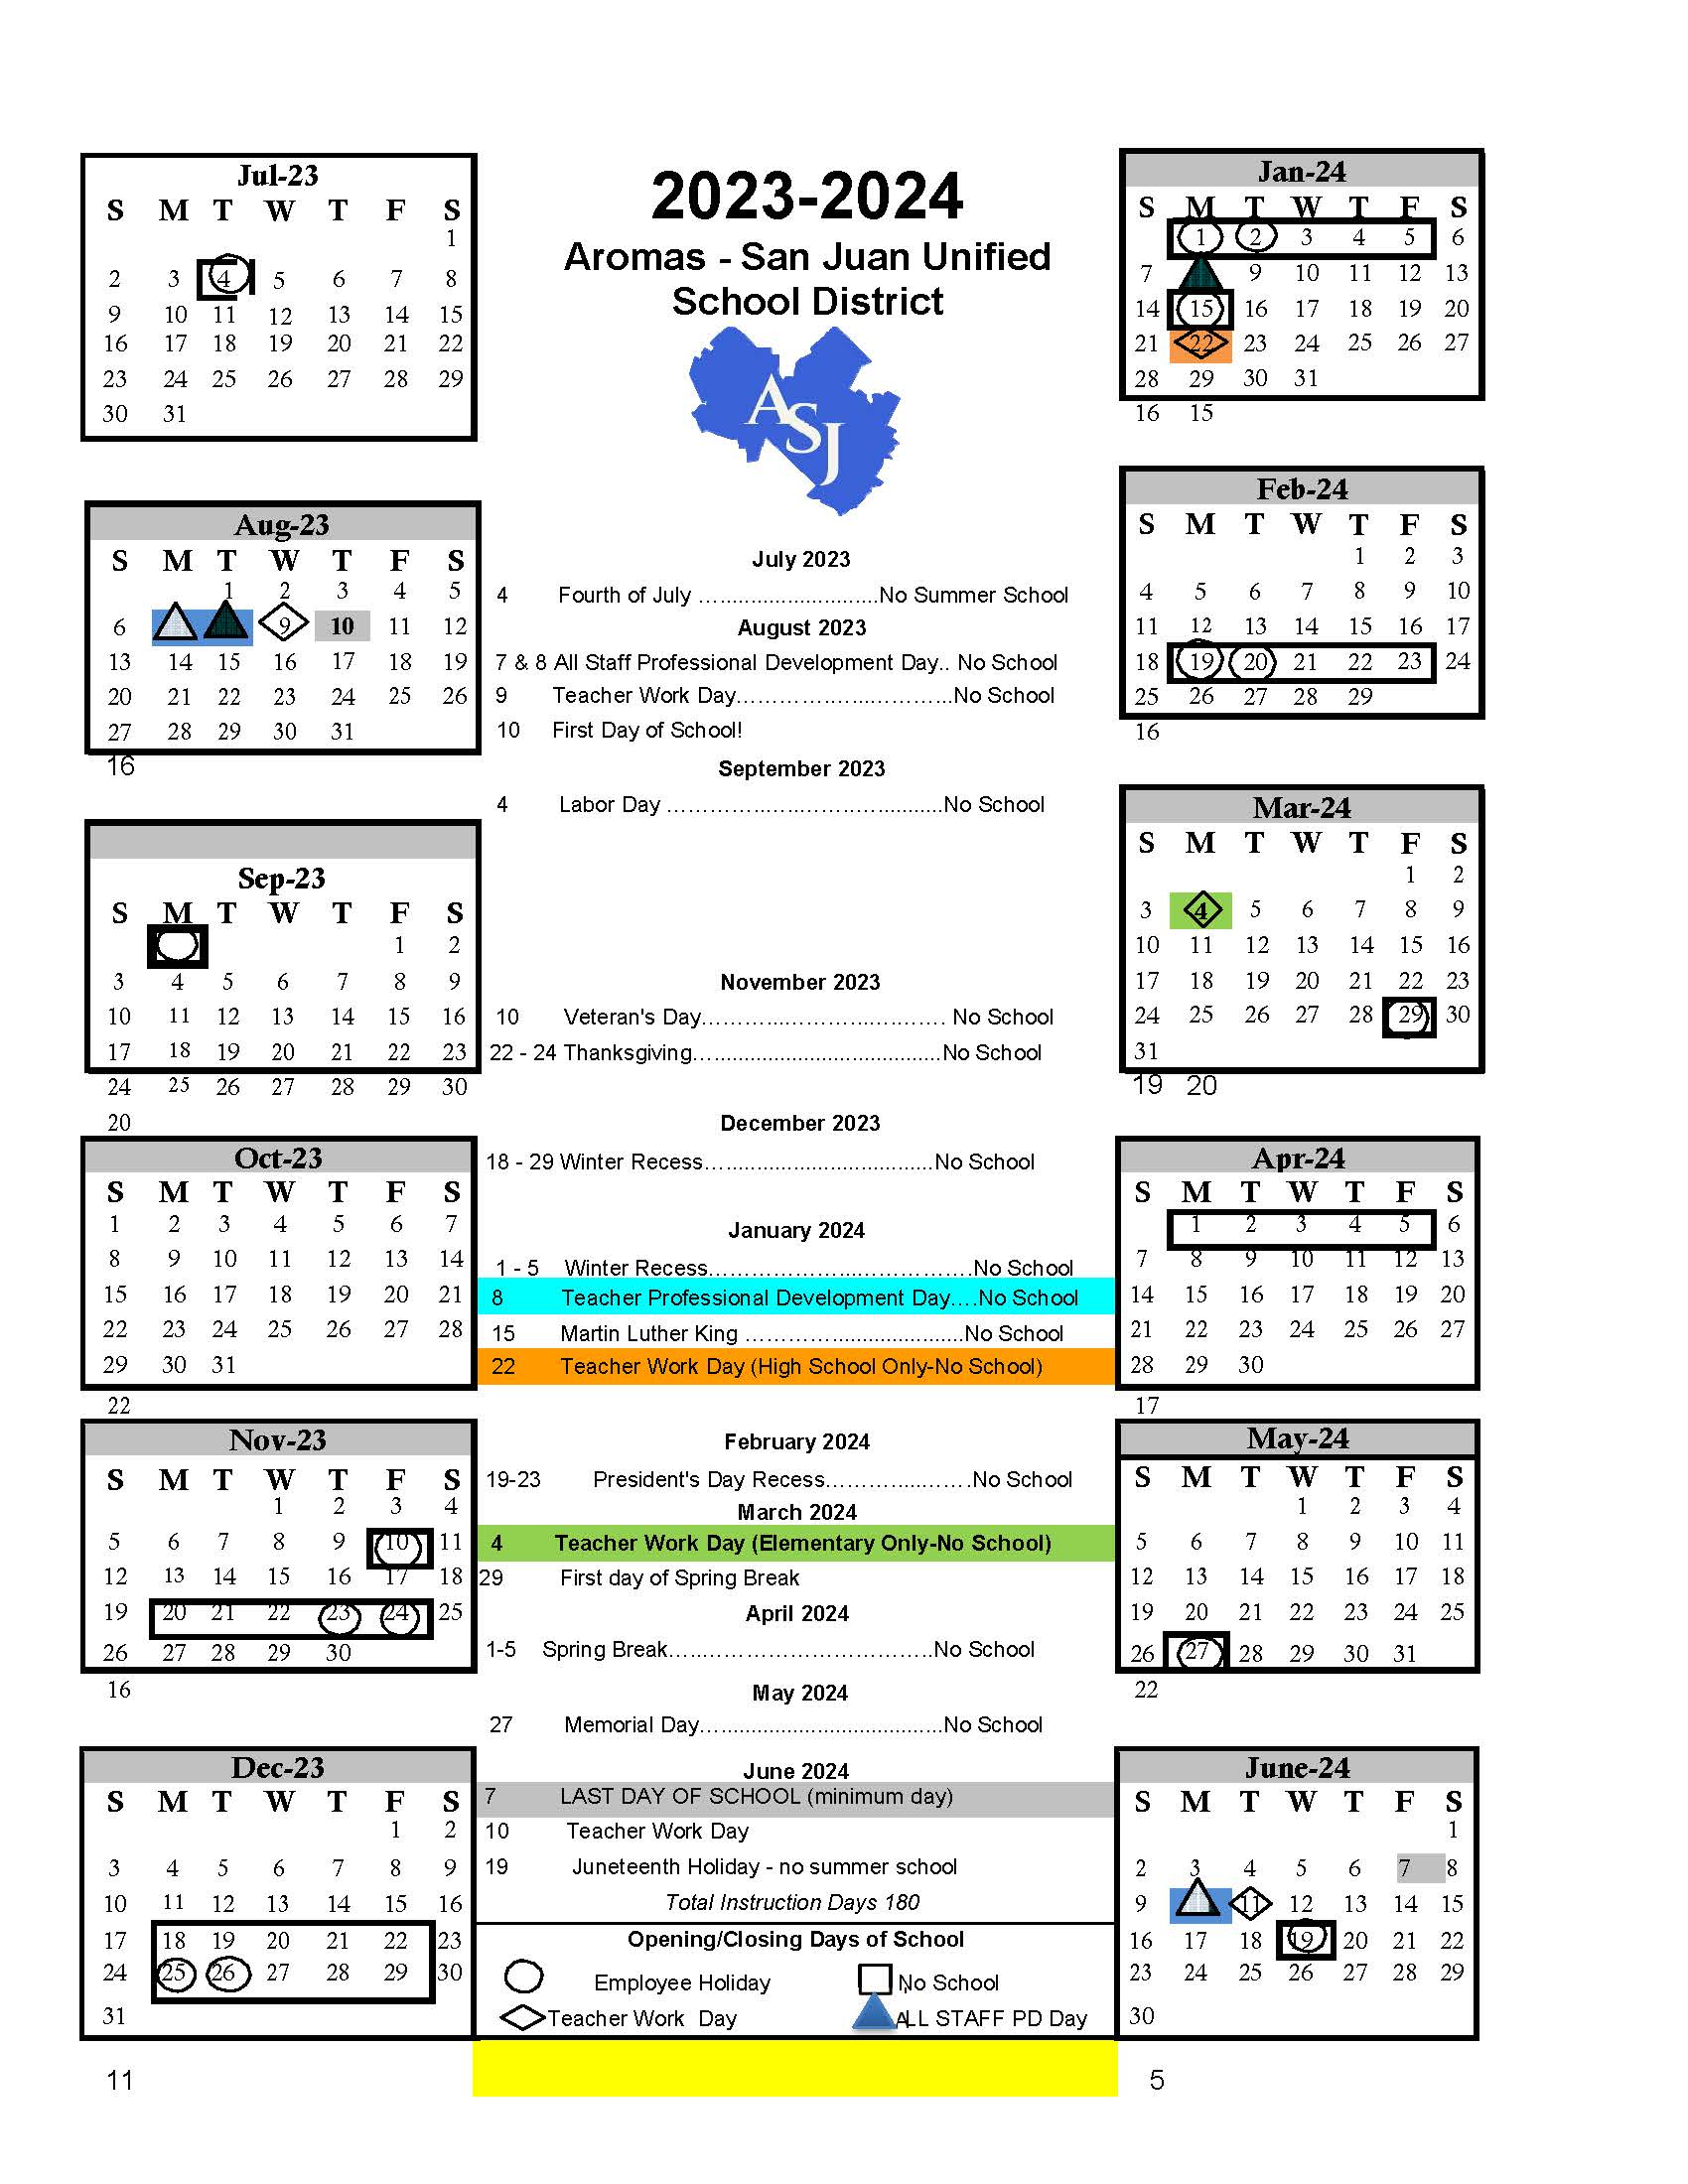 Instructional Calendars AromasSan Juan USD